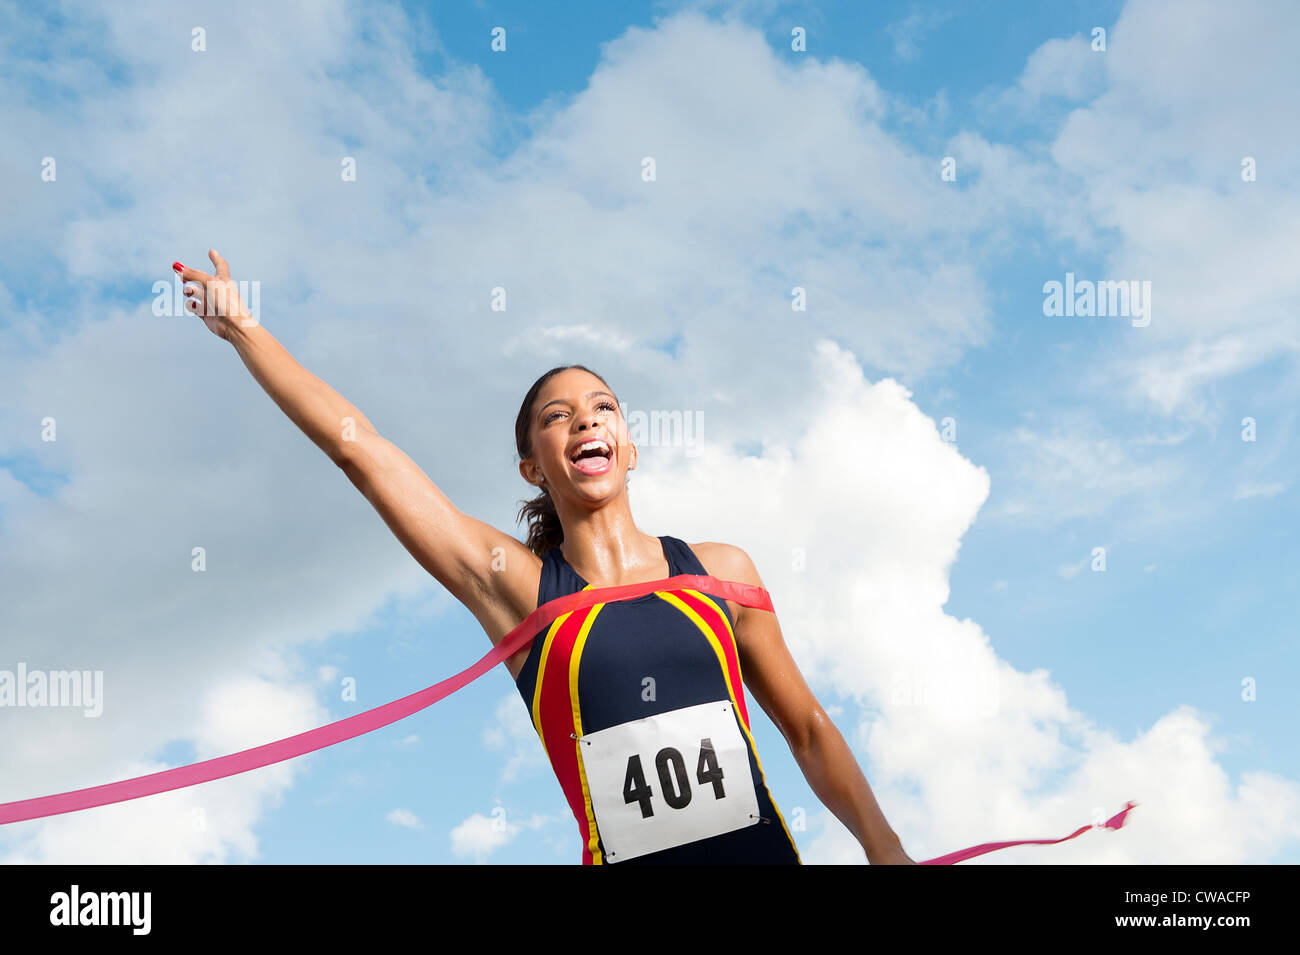 Athlète féminin de franchir la ligne d'arrivée Banque D'Images